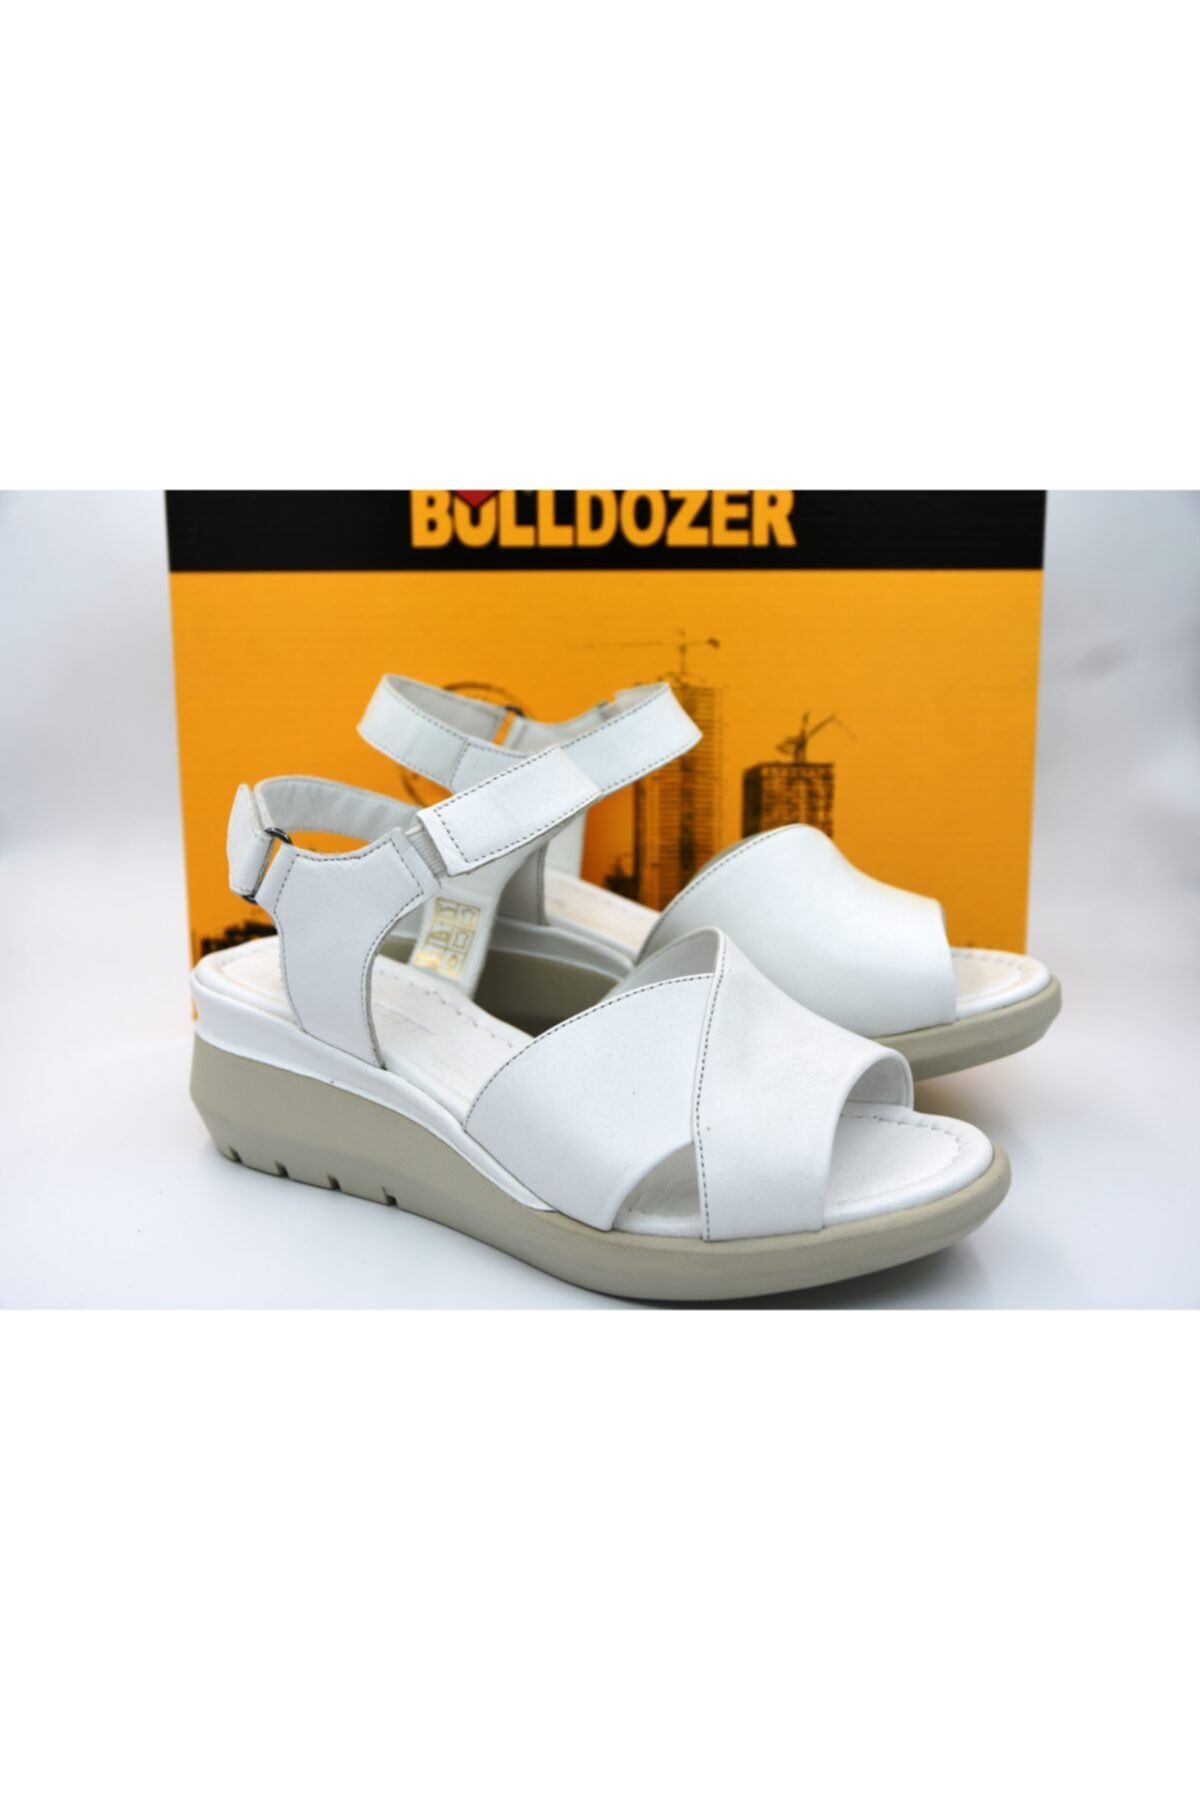 Bulldozer 211680 Hakiki Deri Kadın Sandalet